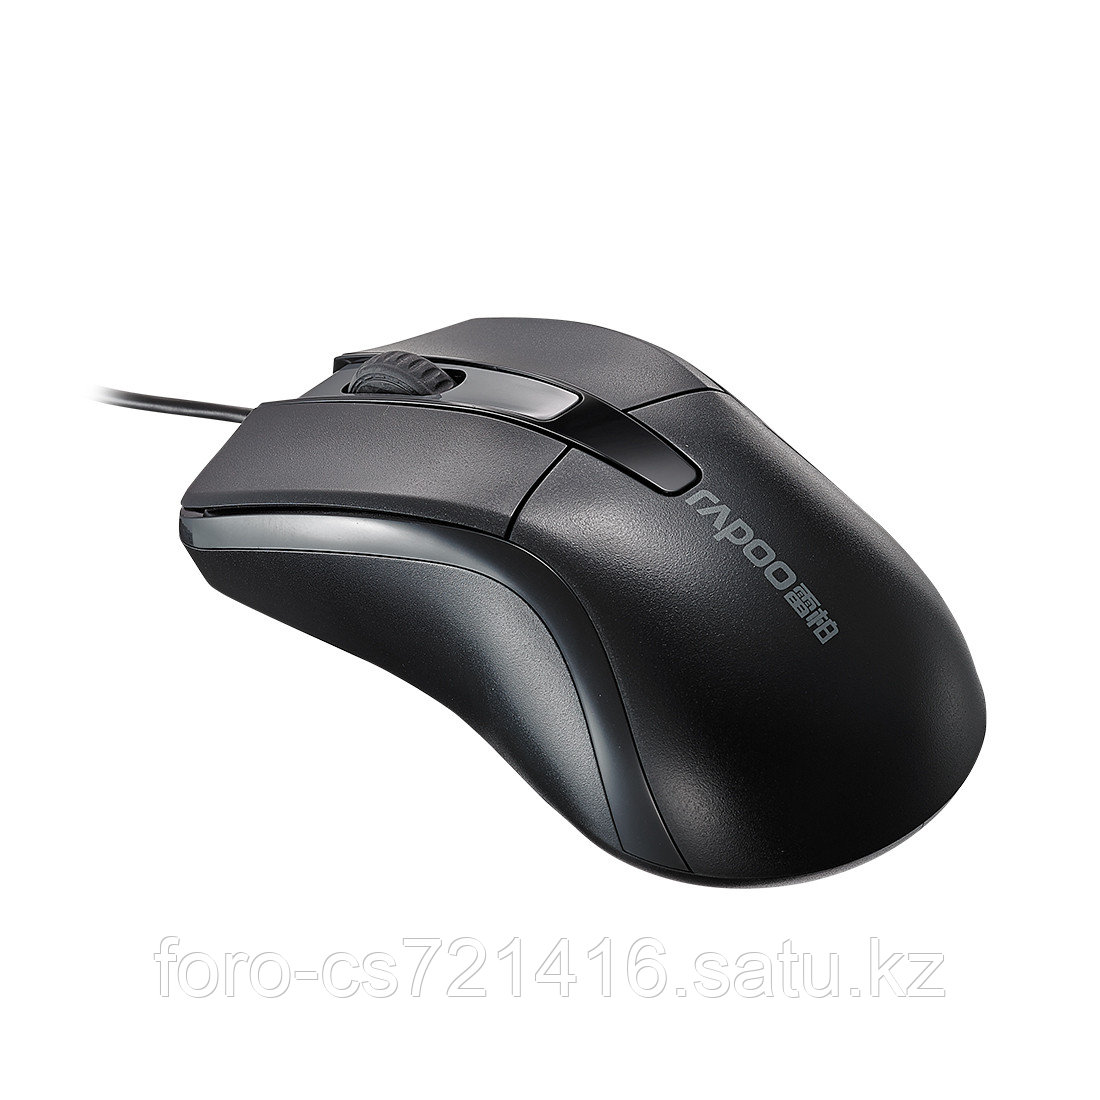 Компьютерная мышь Rapoo N1162 Чёрный, фото 1